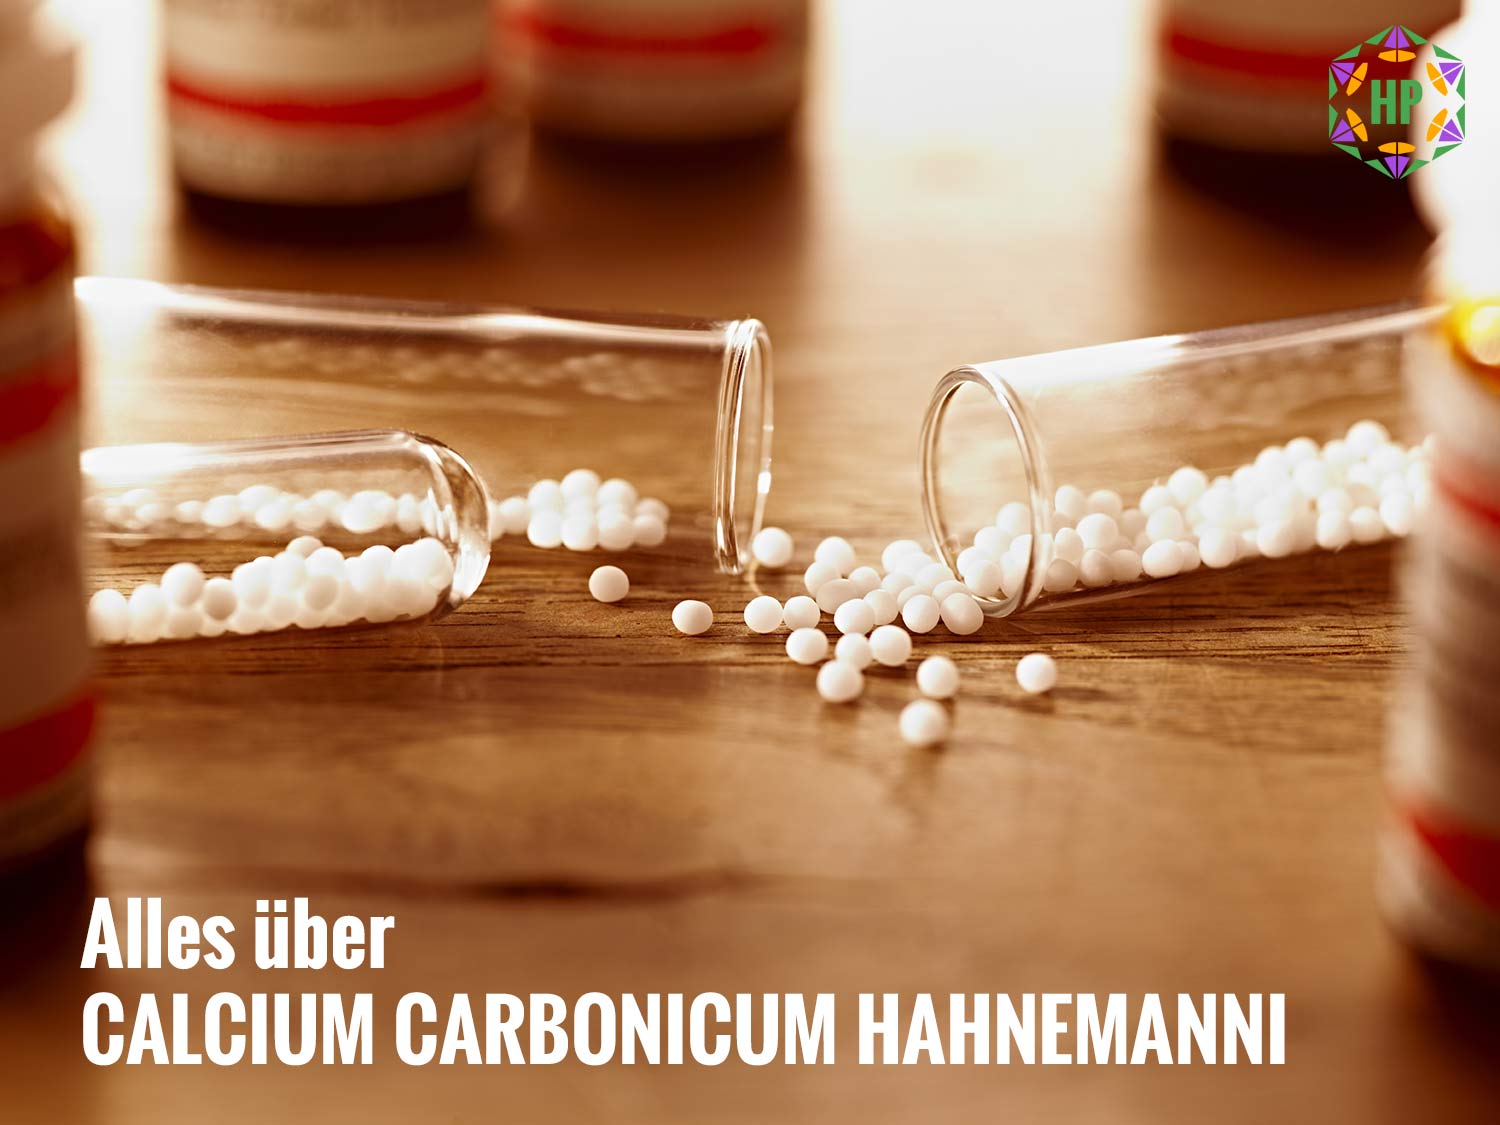 Calcium carbonicum Hahnemanni